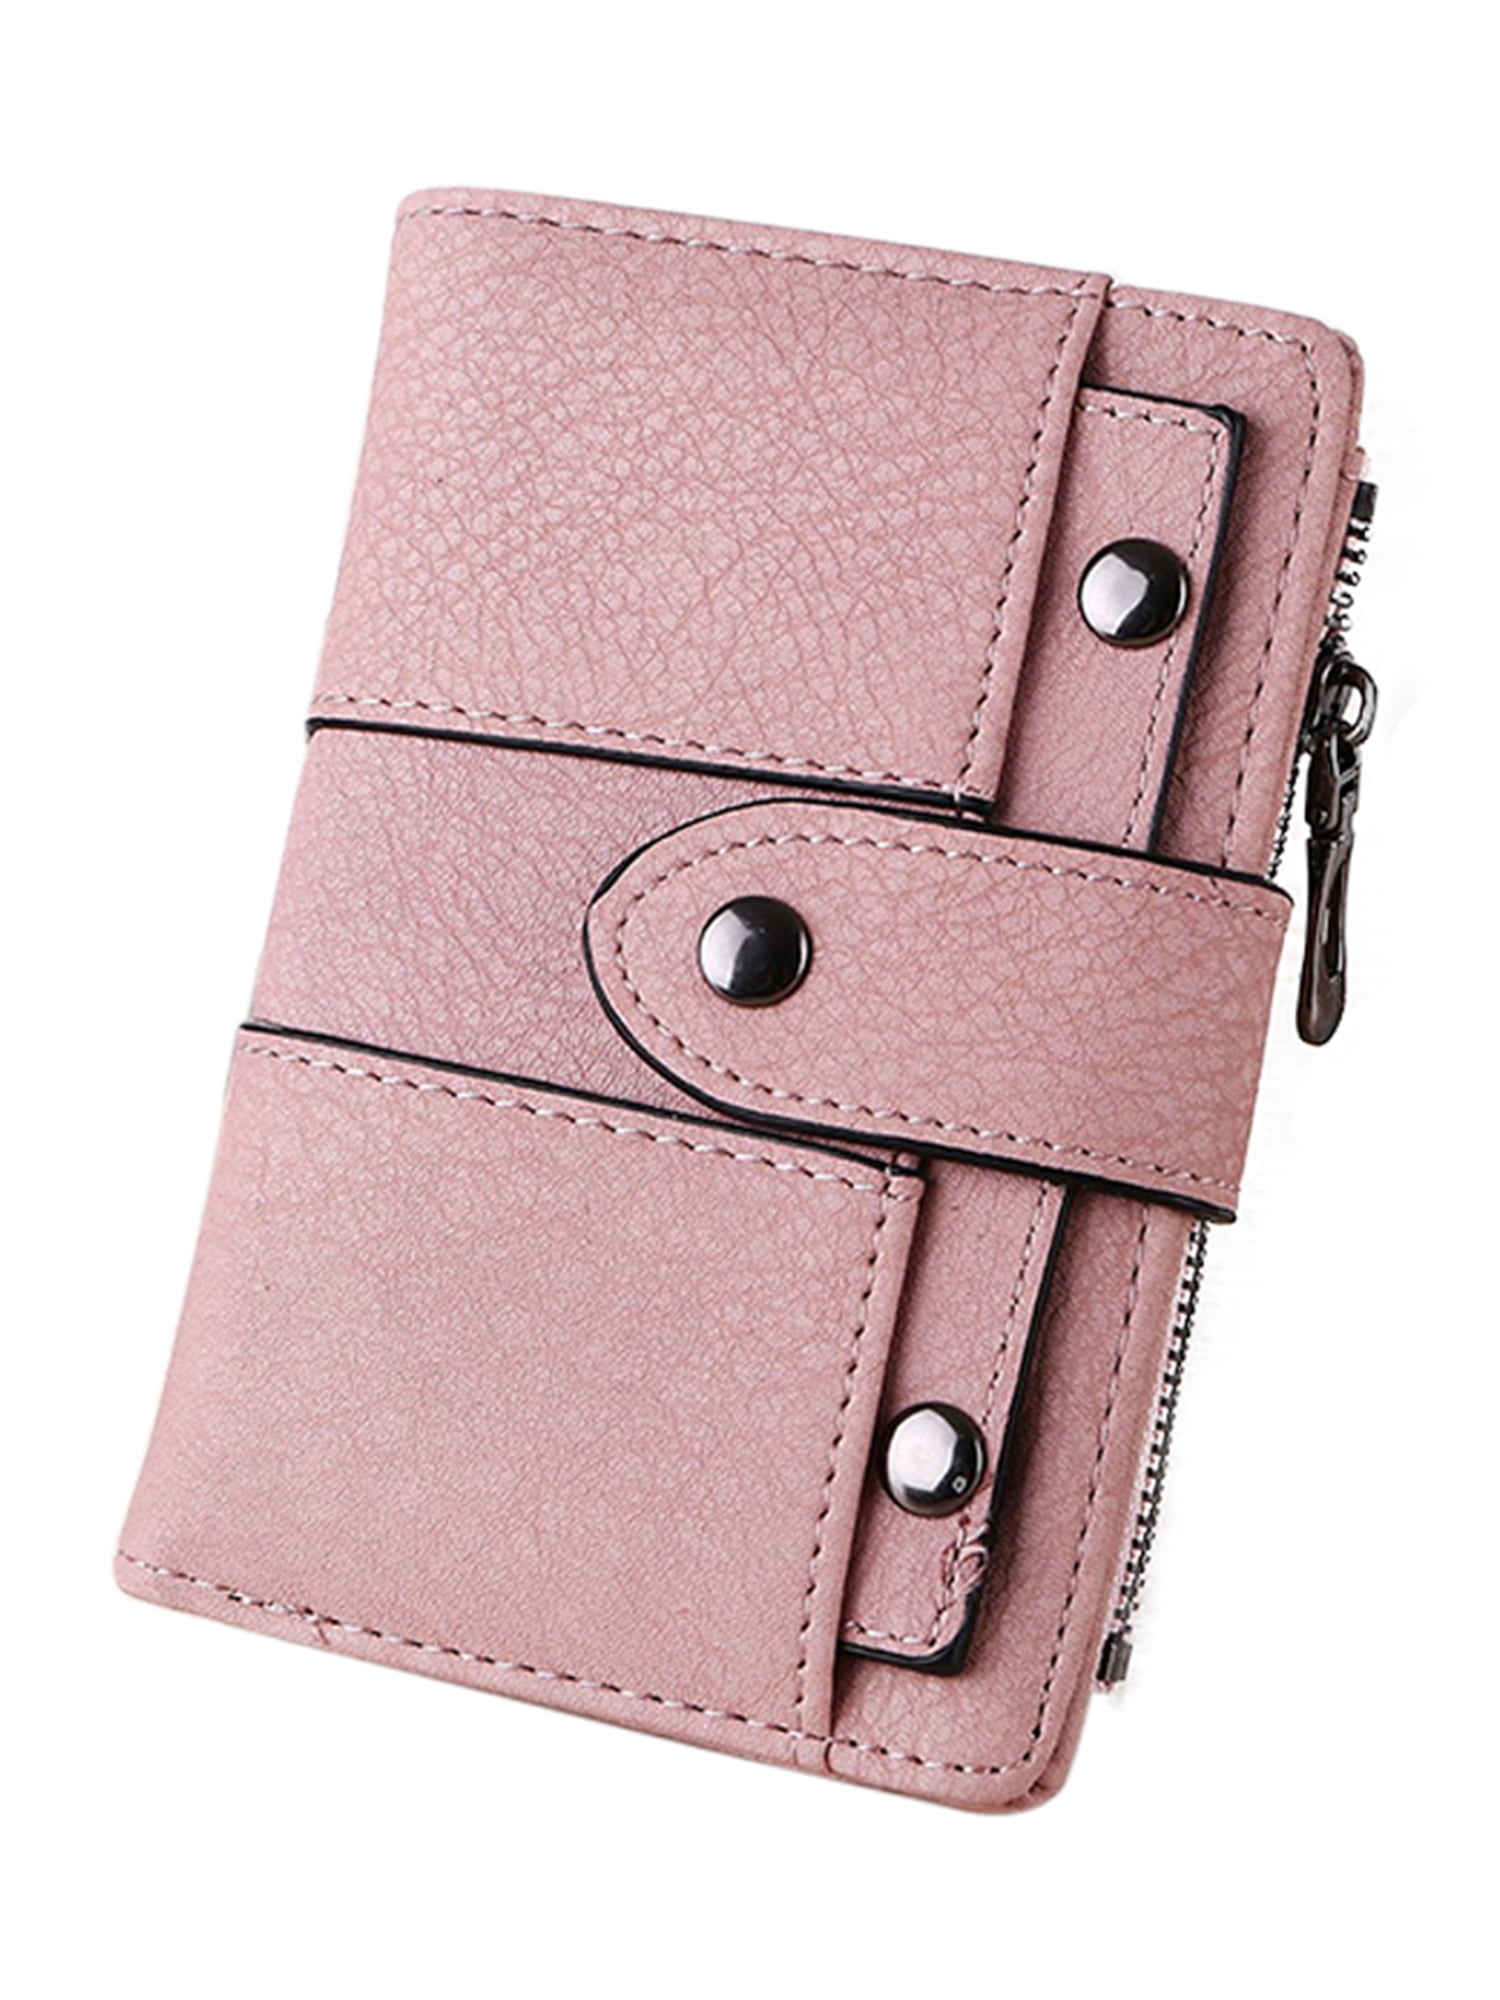 Wodstyle - Women Coin Holder Zip Purse Short Mini Wallet Folding Card